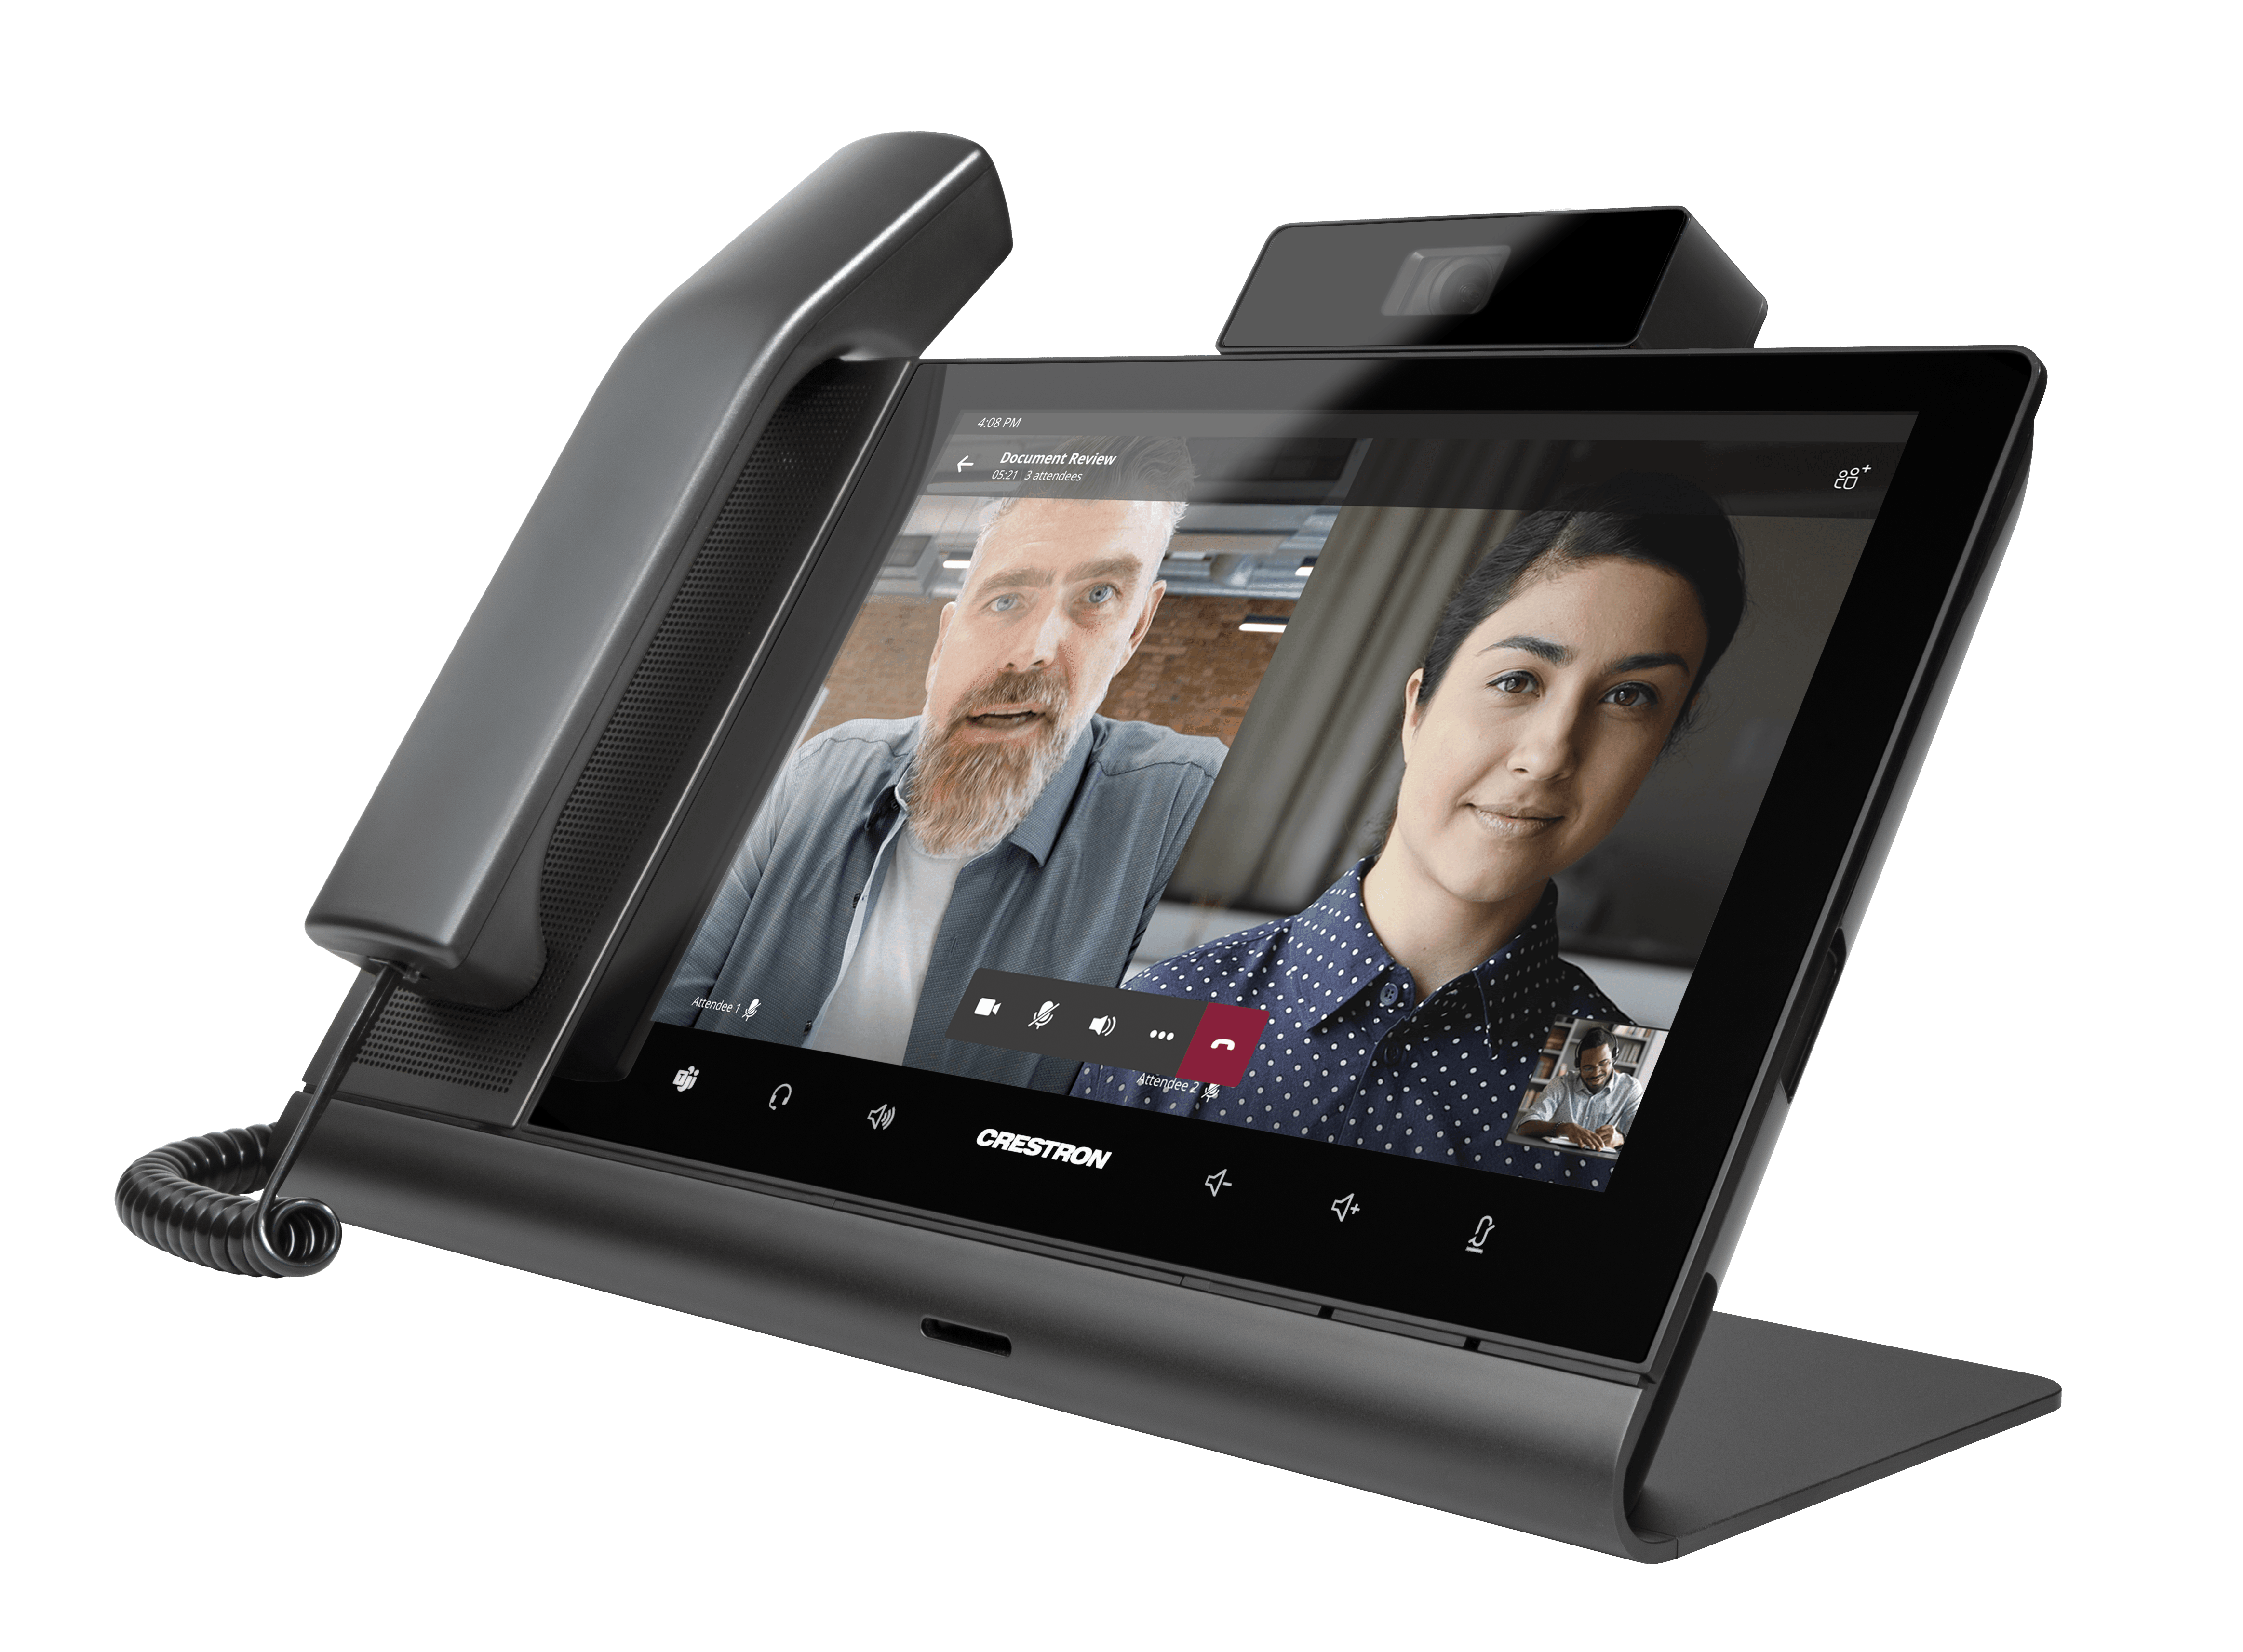 ASUS Zenfone 10 Product Video